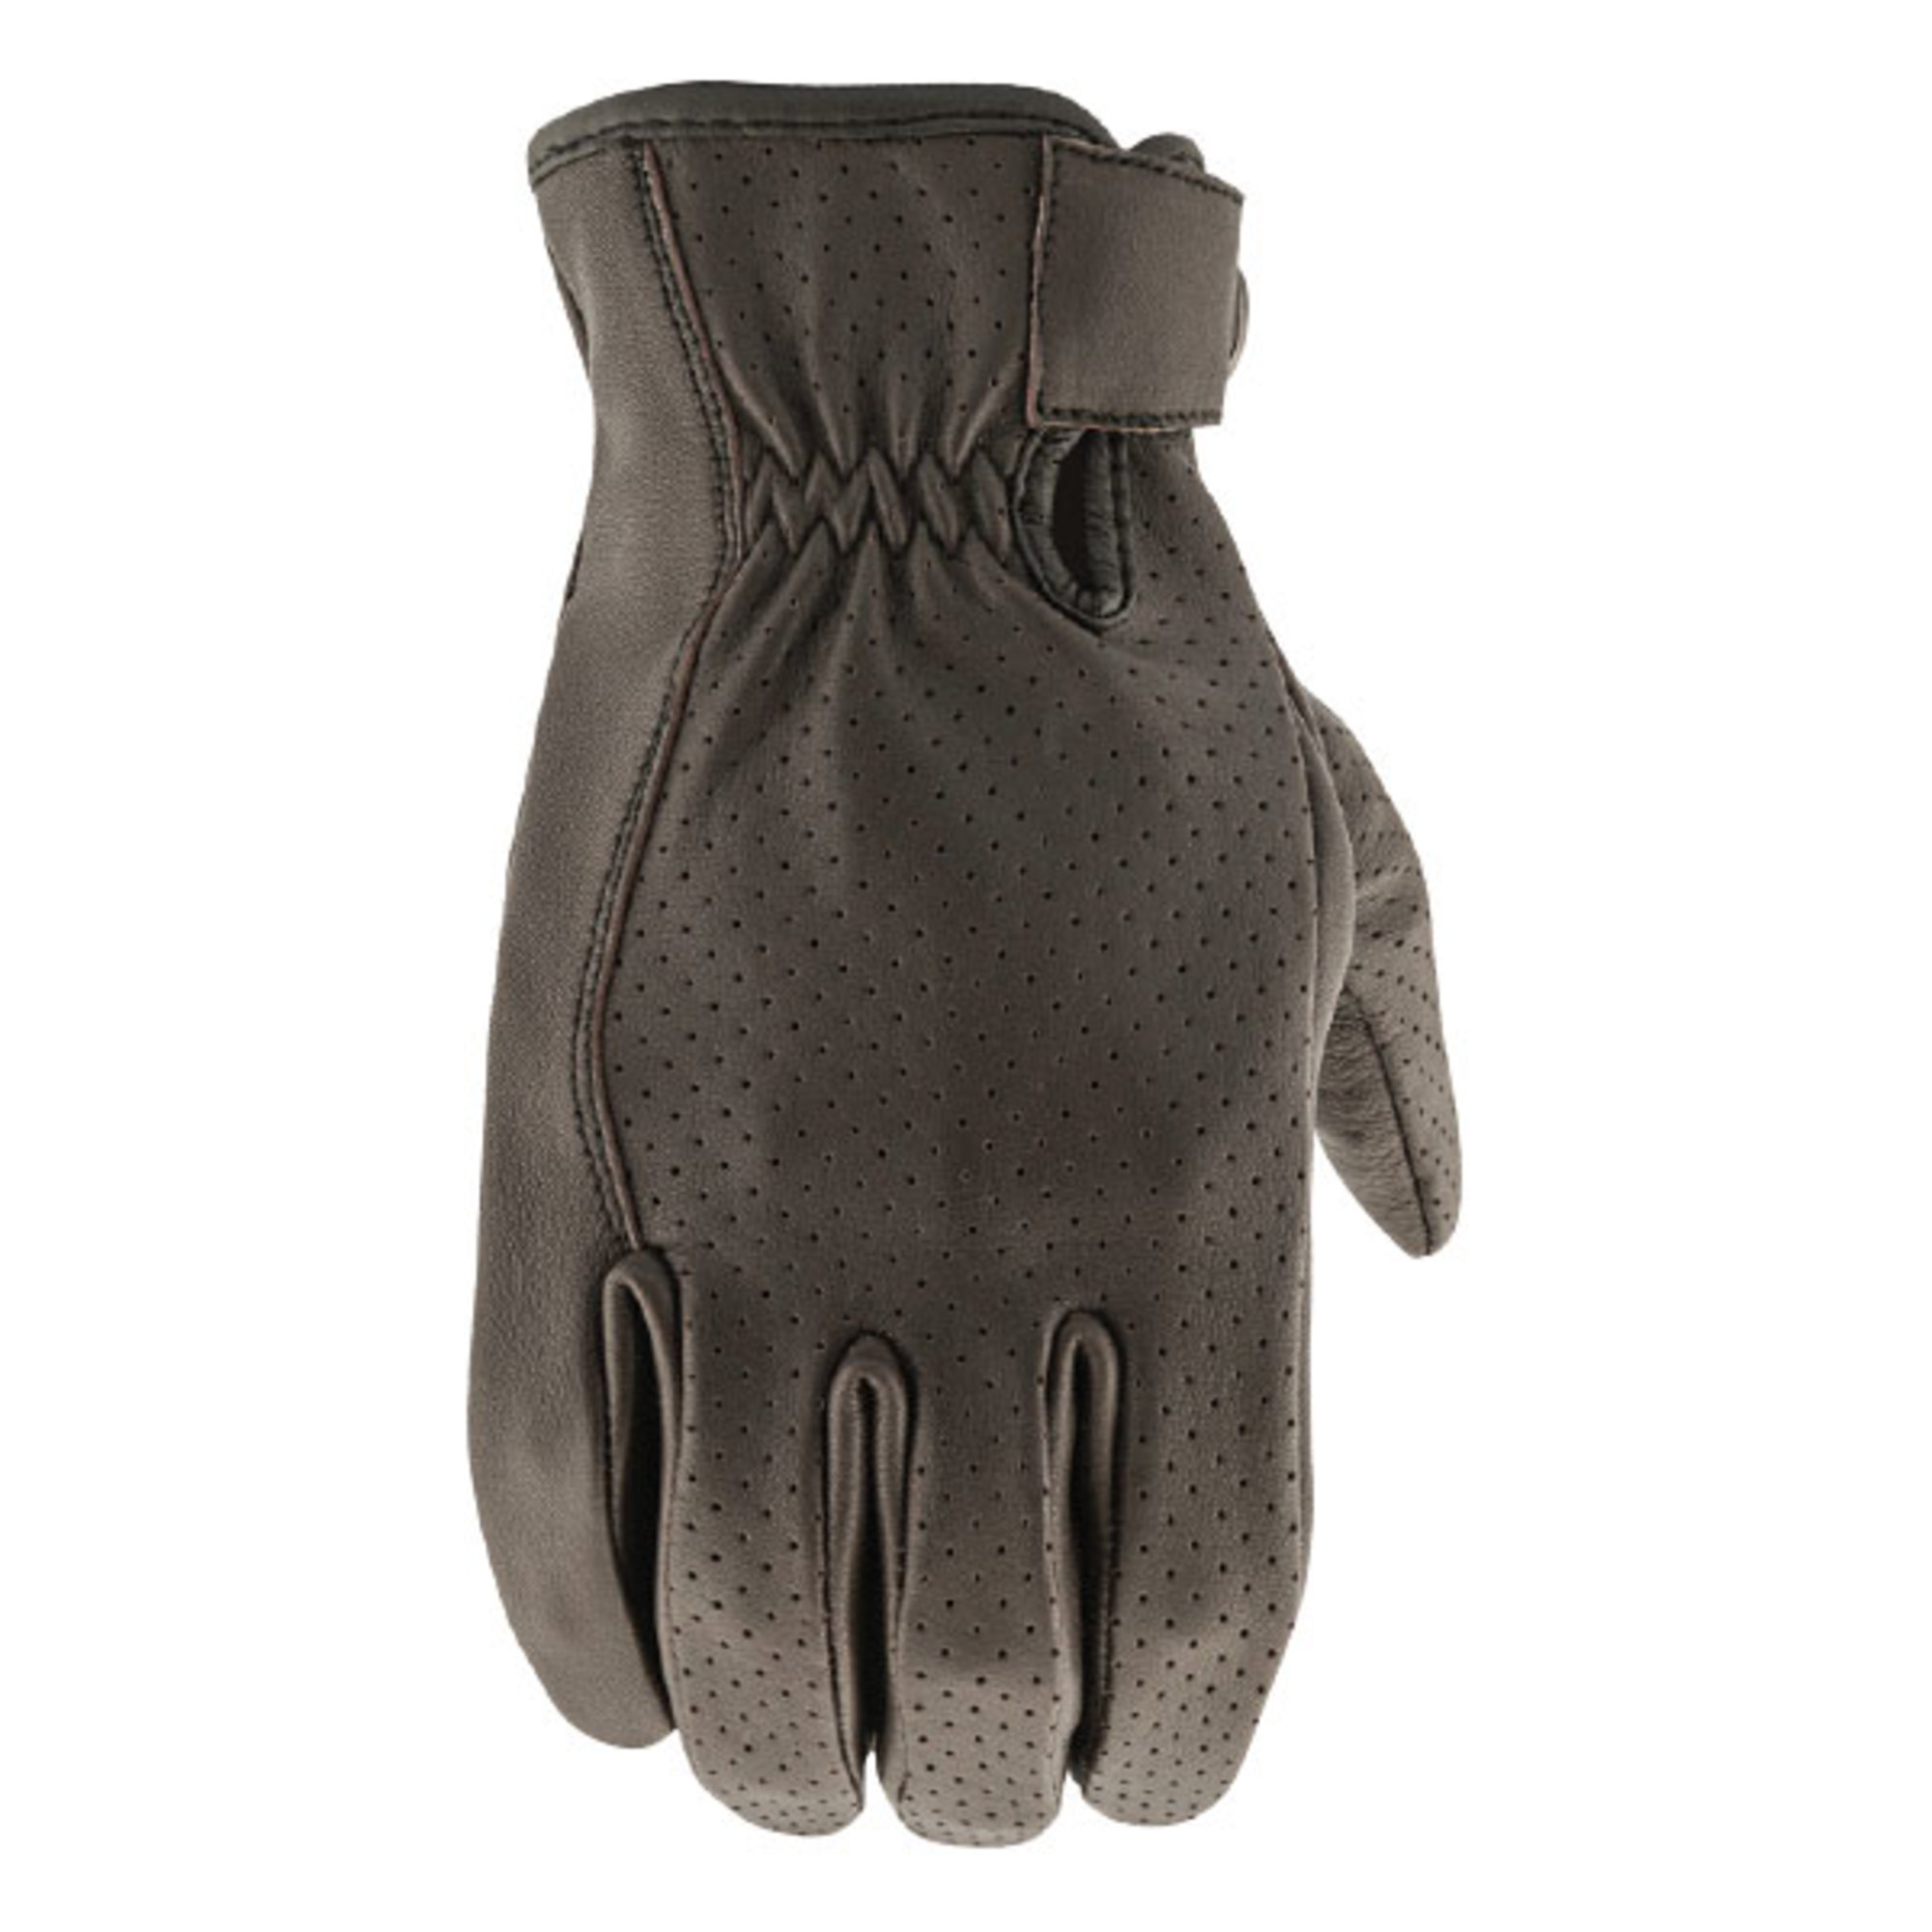 joe rocket leather gloves for men 67 deer skin perforated